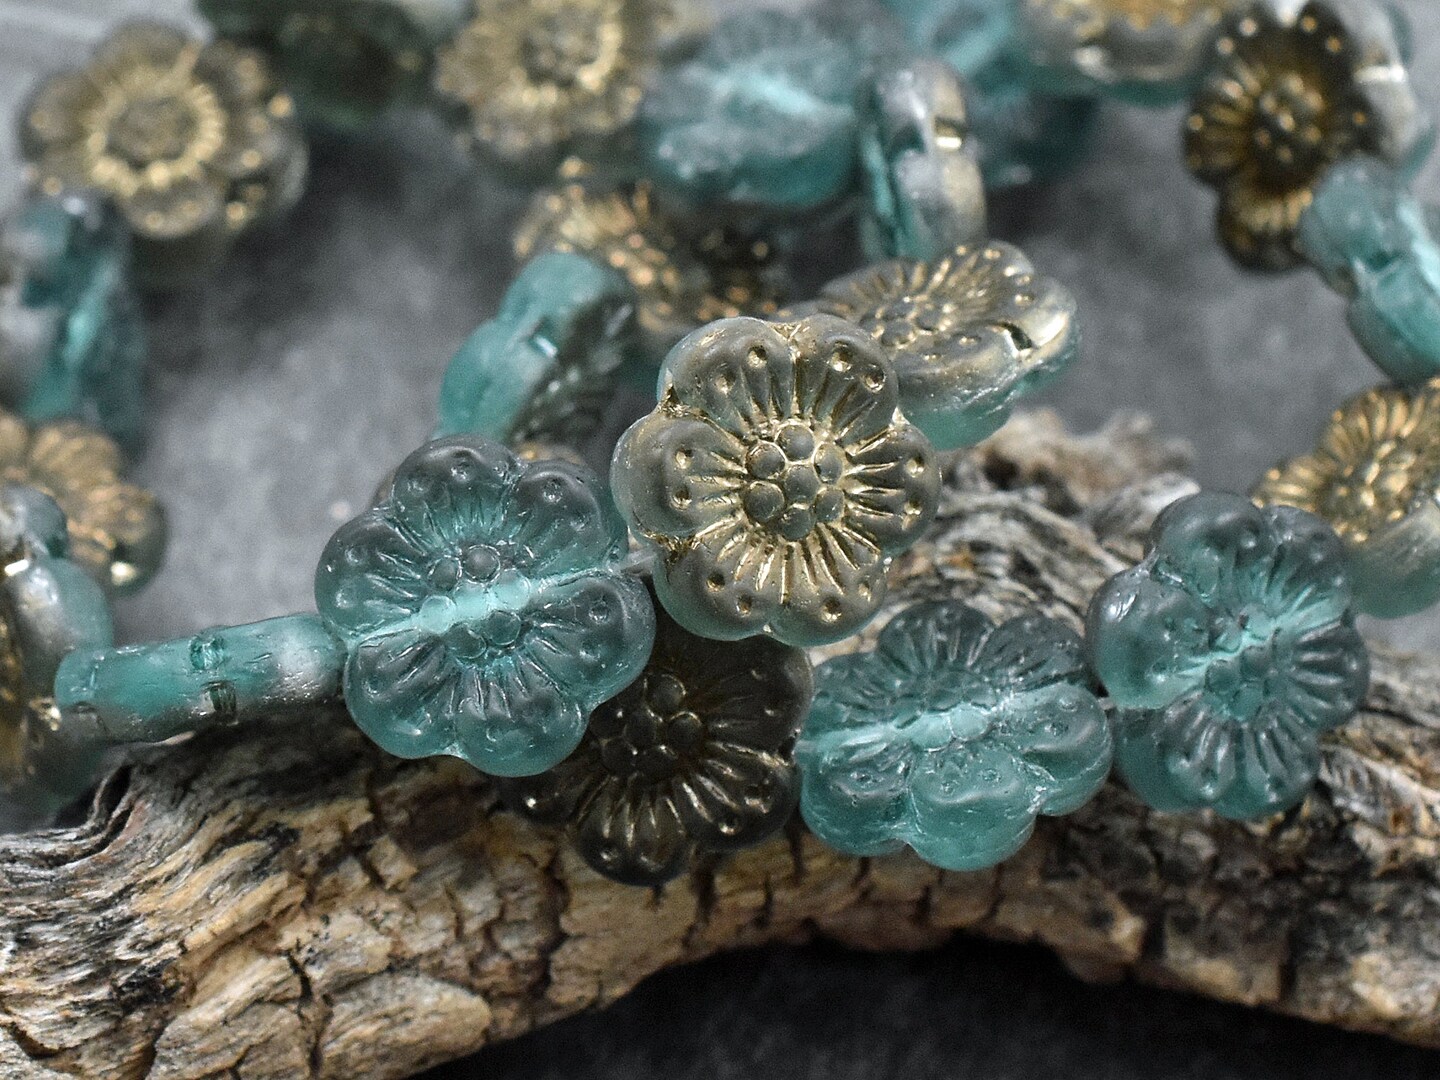 14mm 1/2 Antique Bronze Washed Dark Teal Aqua Wildflower Beads